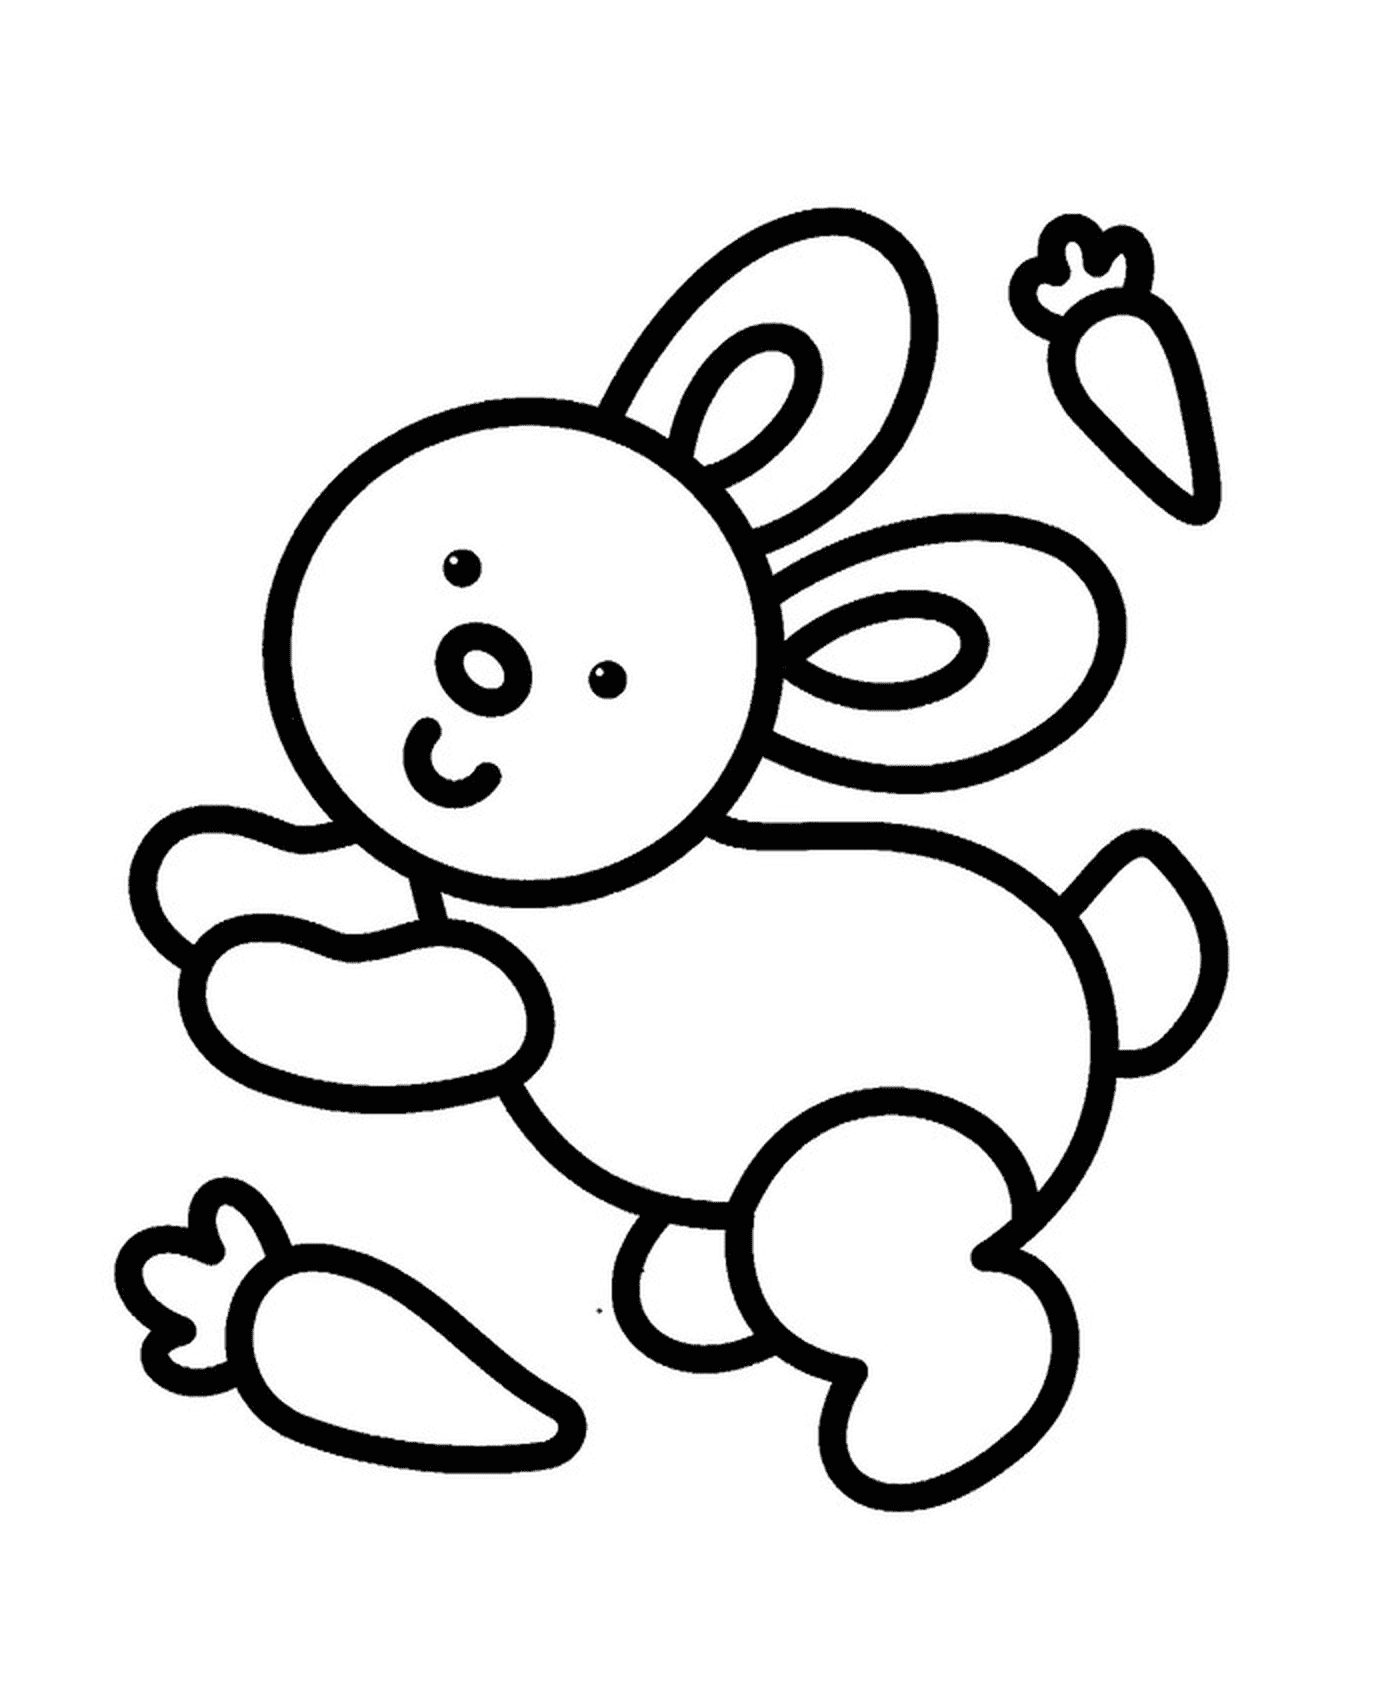  Um coelho fácil de desenhar para crianças do jardim de infância 